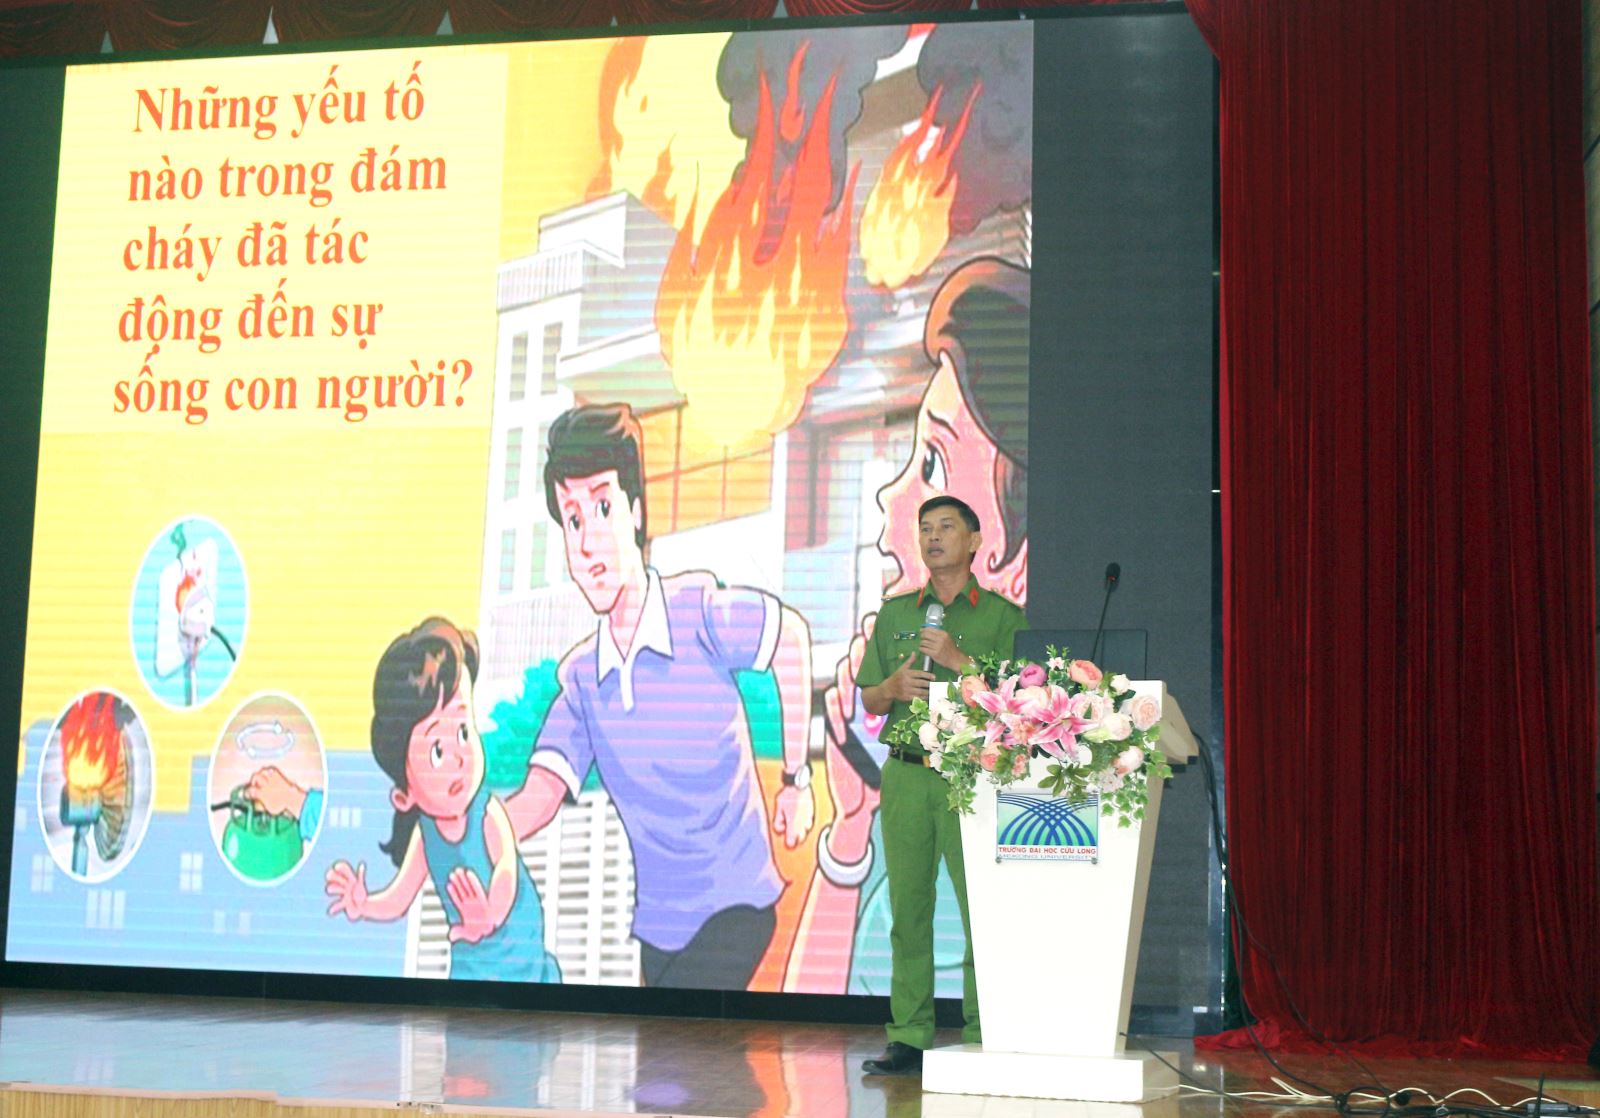 Trung tá Đỗ thành Khương trình bày những yếu tố trong đám cháy tác động đến sự sống của con người.